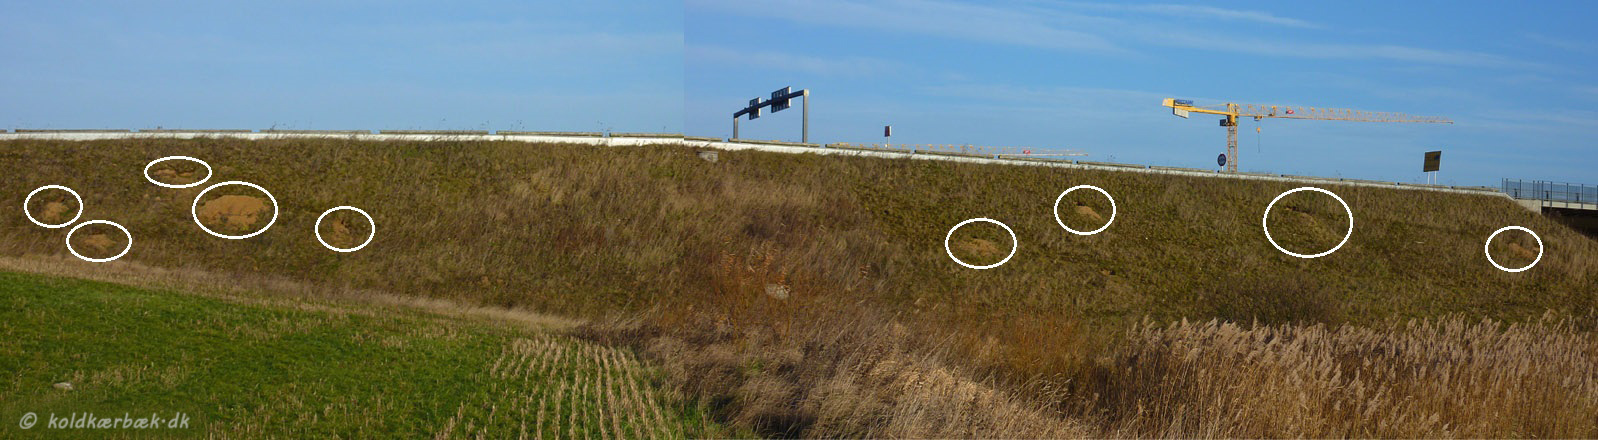 Rævegrave tæt på Koldkær Bæk. 1-12-2013. Kun ca. 200 m nord for Koldkær Bæks's udløb i Egå, går Søftenmotervejen hen over Egå. Der er kørt i tusindevis af kubikmeter stabilt grus på, for at sikre en passende vejhøjde over åen. Det er noget rævene har udnyttet. Det er nemt at grave gange i det stabile grus. Ca. 10 rævegrave er det blevet til. Dog er de ikke særlig stabile - nogle grave ser ud til at være styrtet sammen :-( 